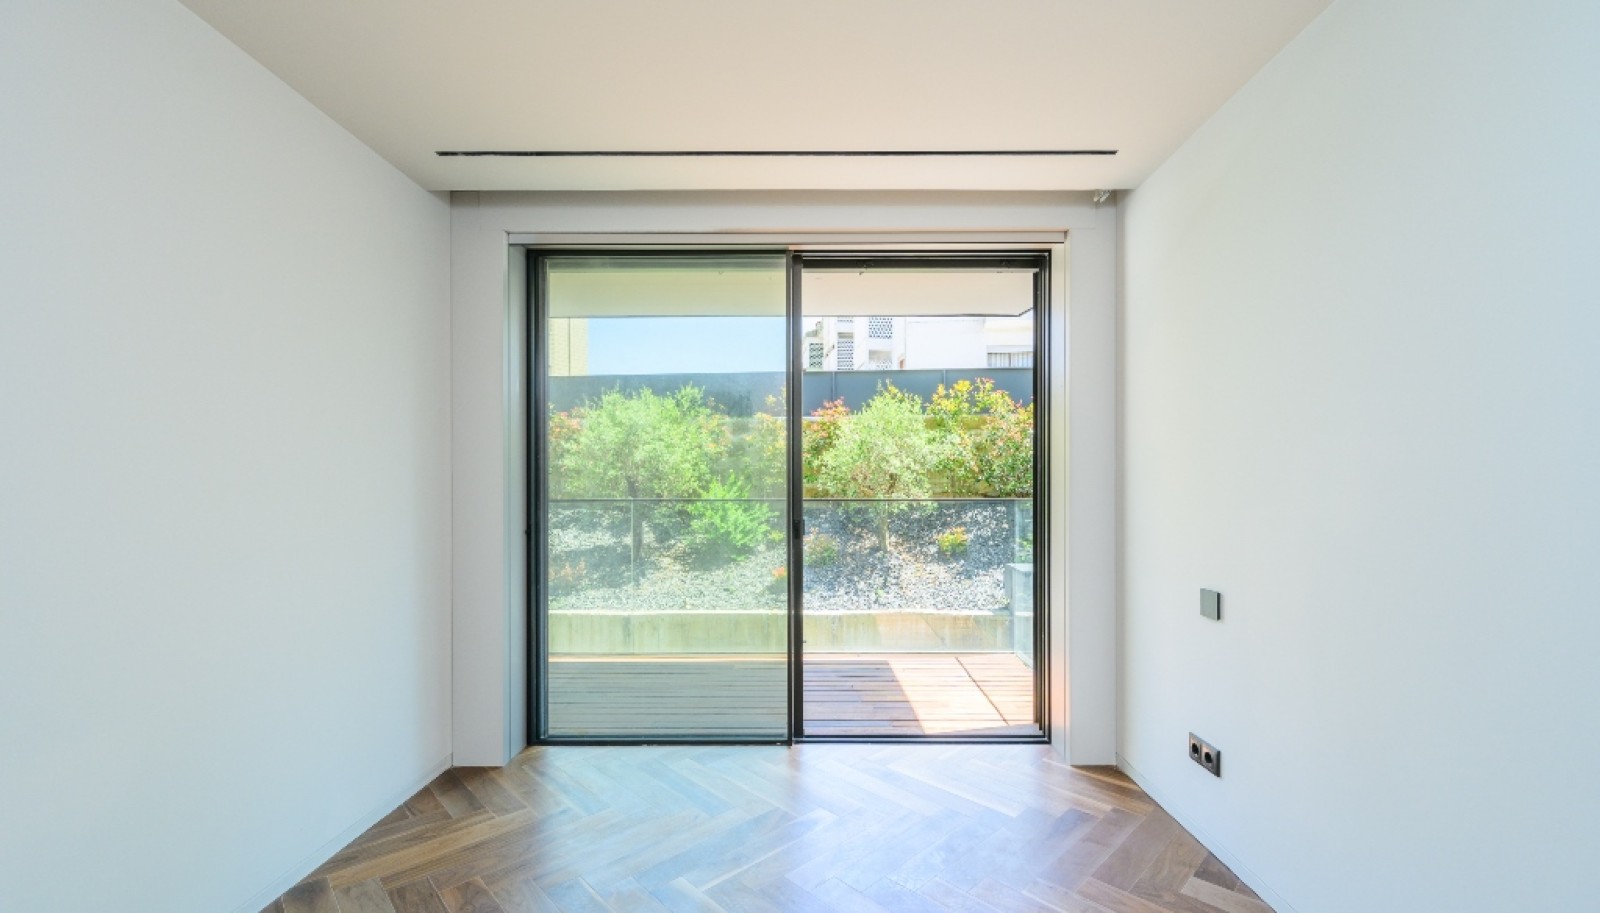 Venda: Apartamento novo com terraço, na Boavista, Porto_267518